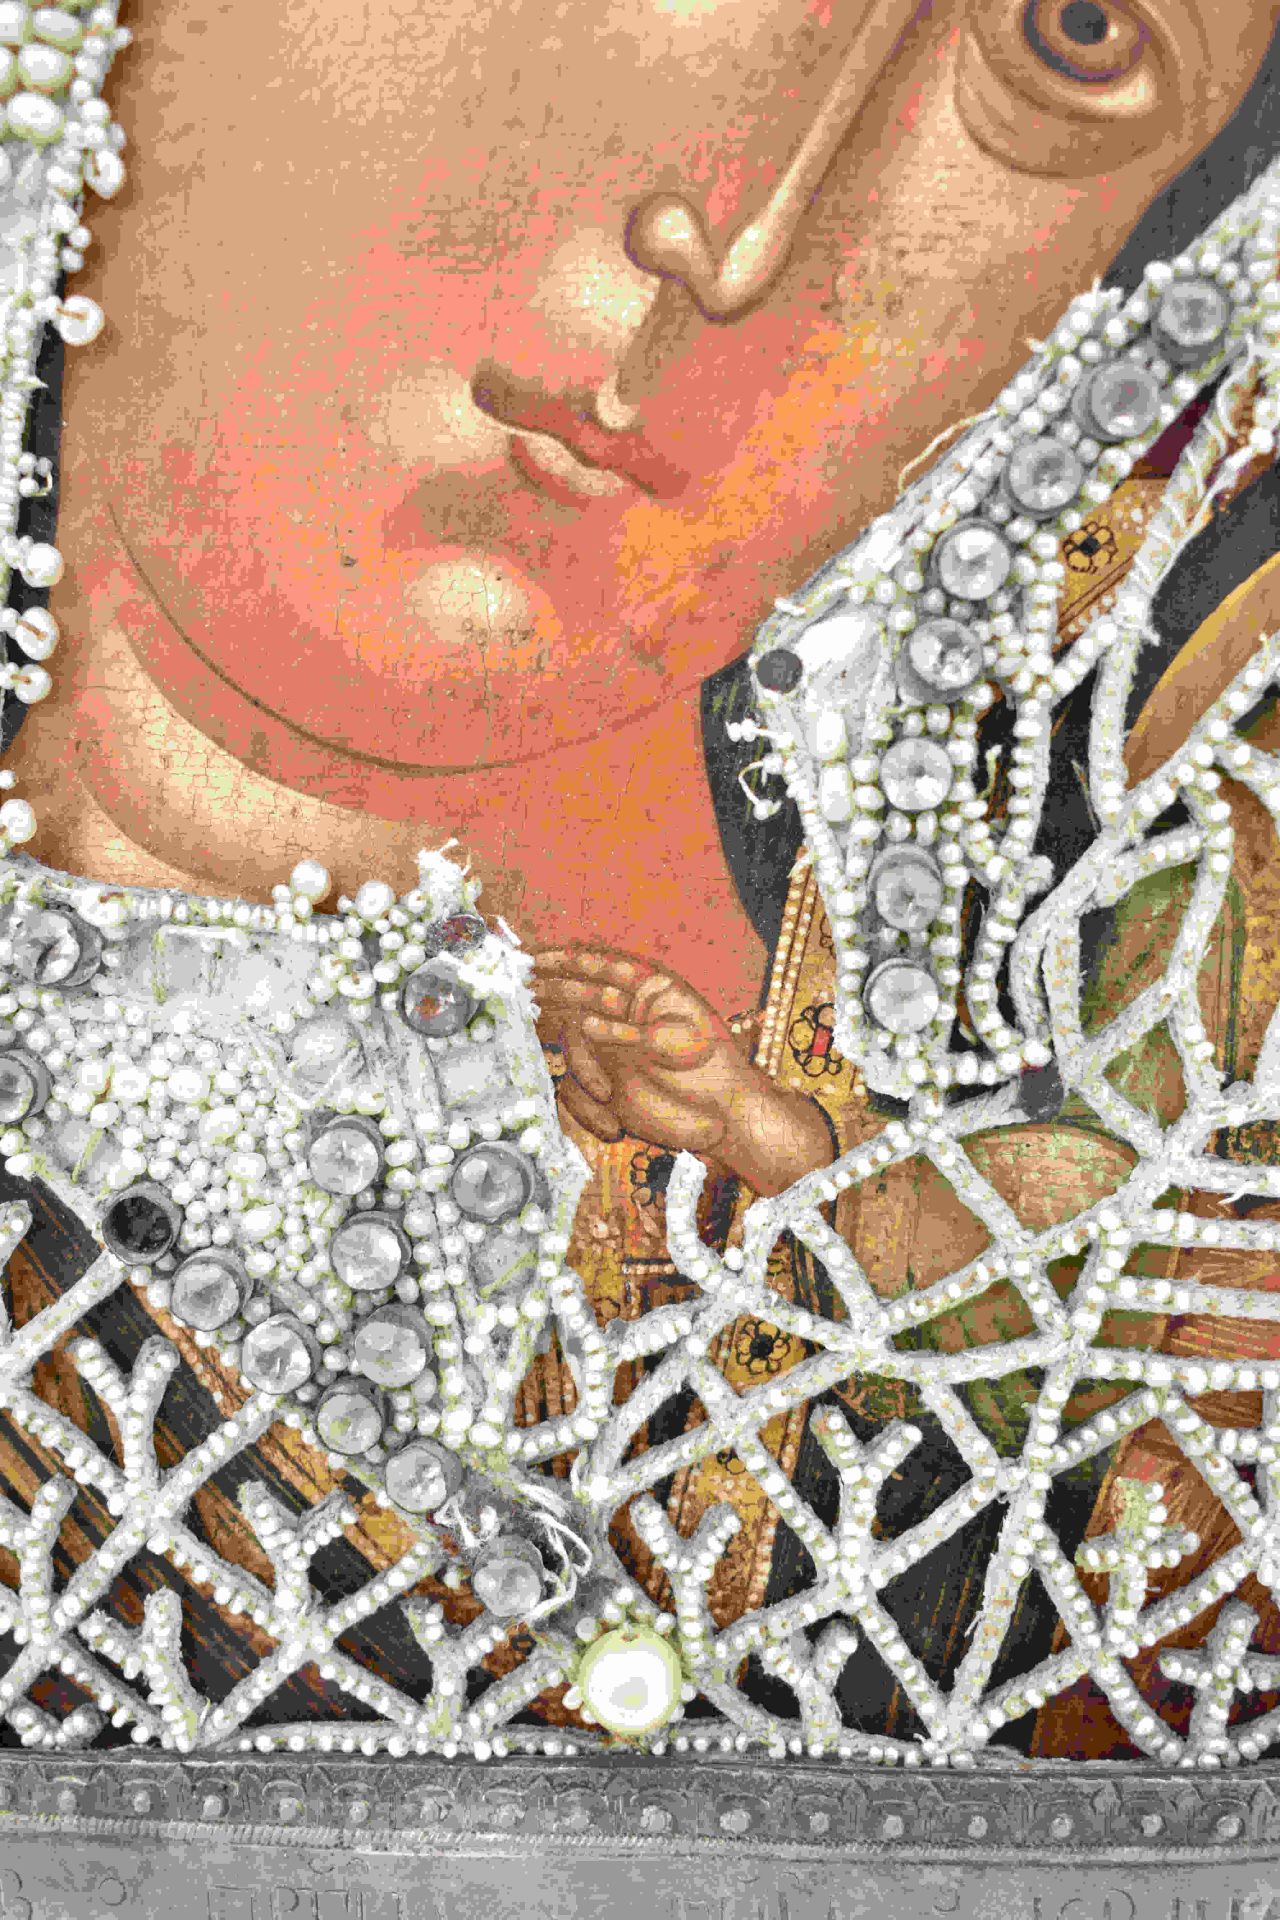 Marienikone mit Perlkleid und Silberoklad, St. Petersburg, frühes 19. Jh. - Bild 13 aus 18